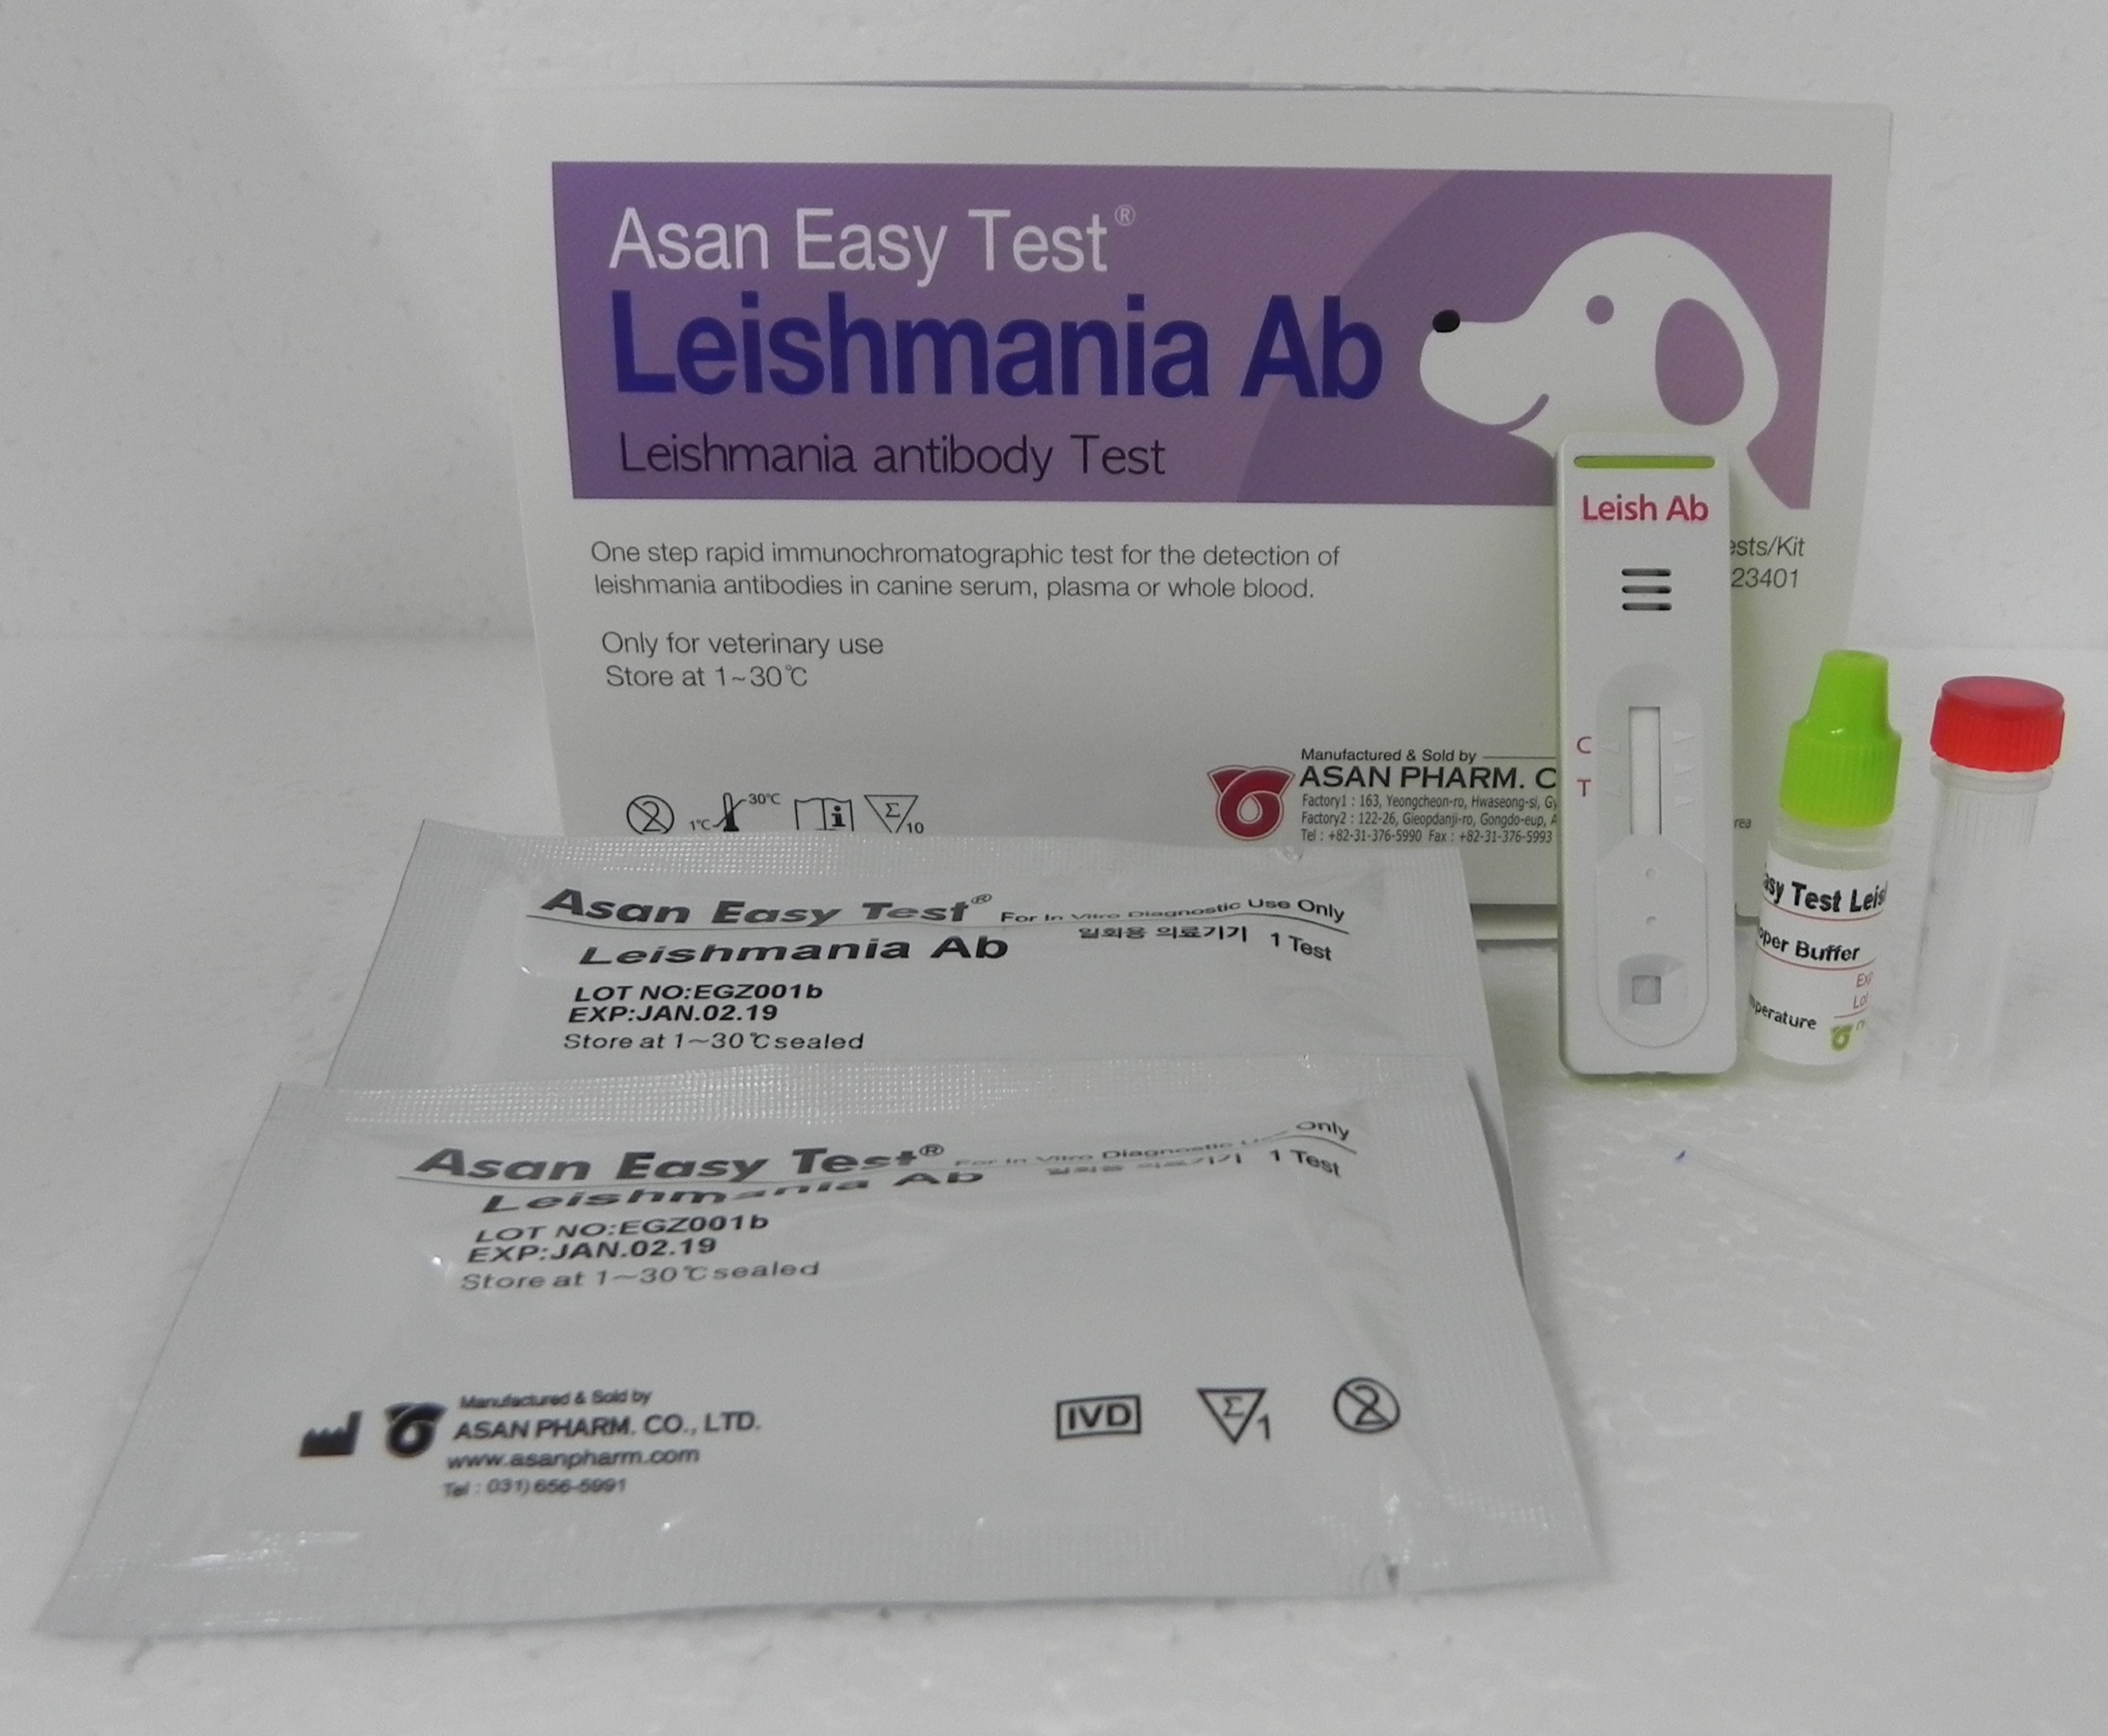 Asan Easy Test Leishmania Ab